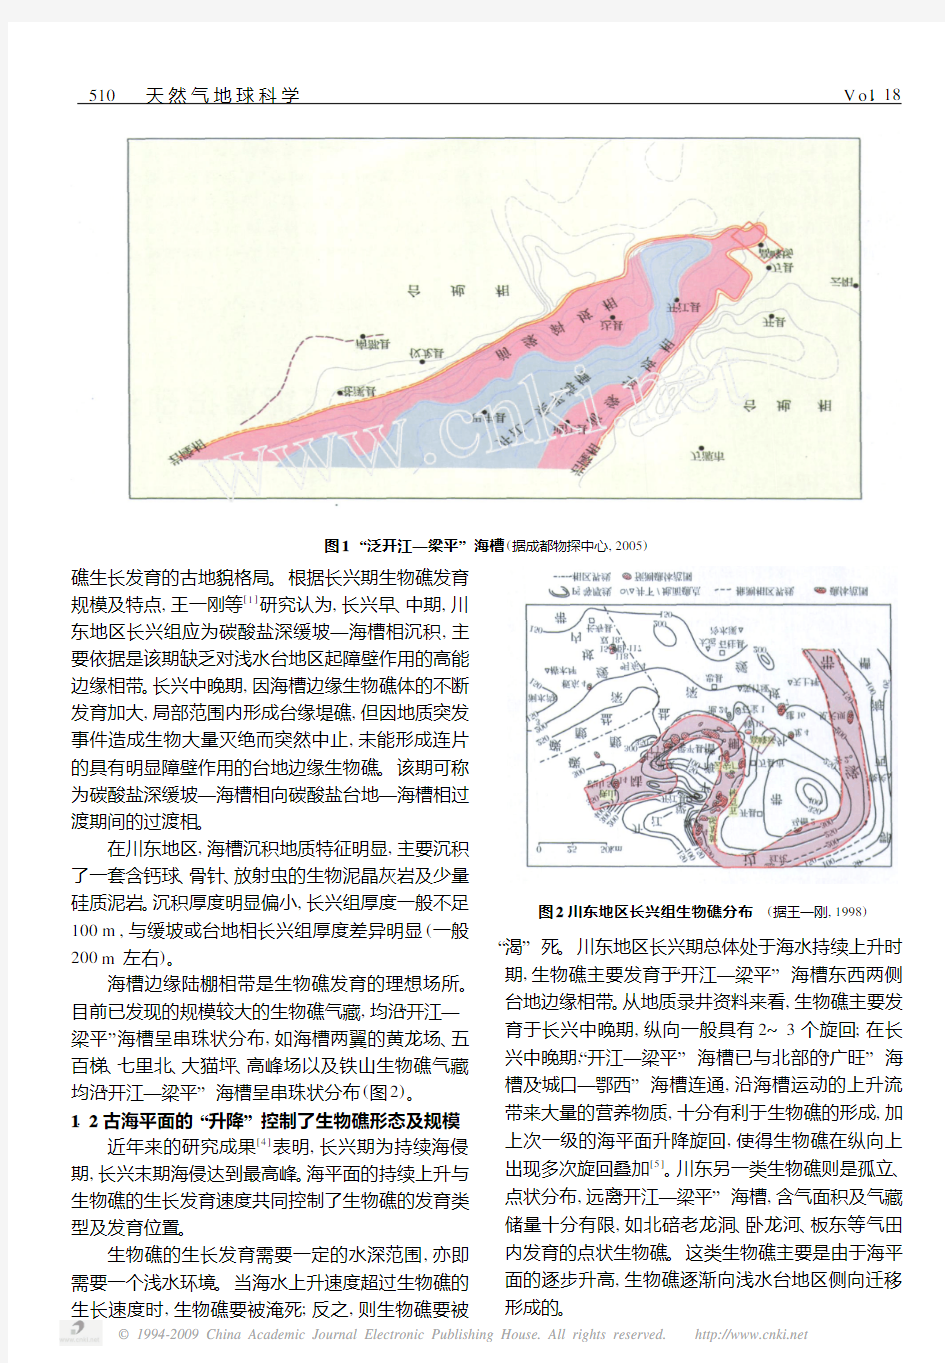 川东长兴组生物礁分布控制因素及地震识别技术